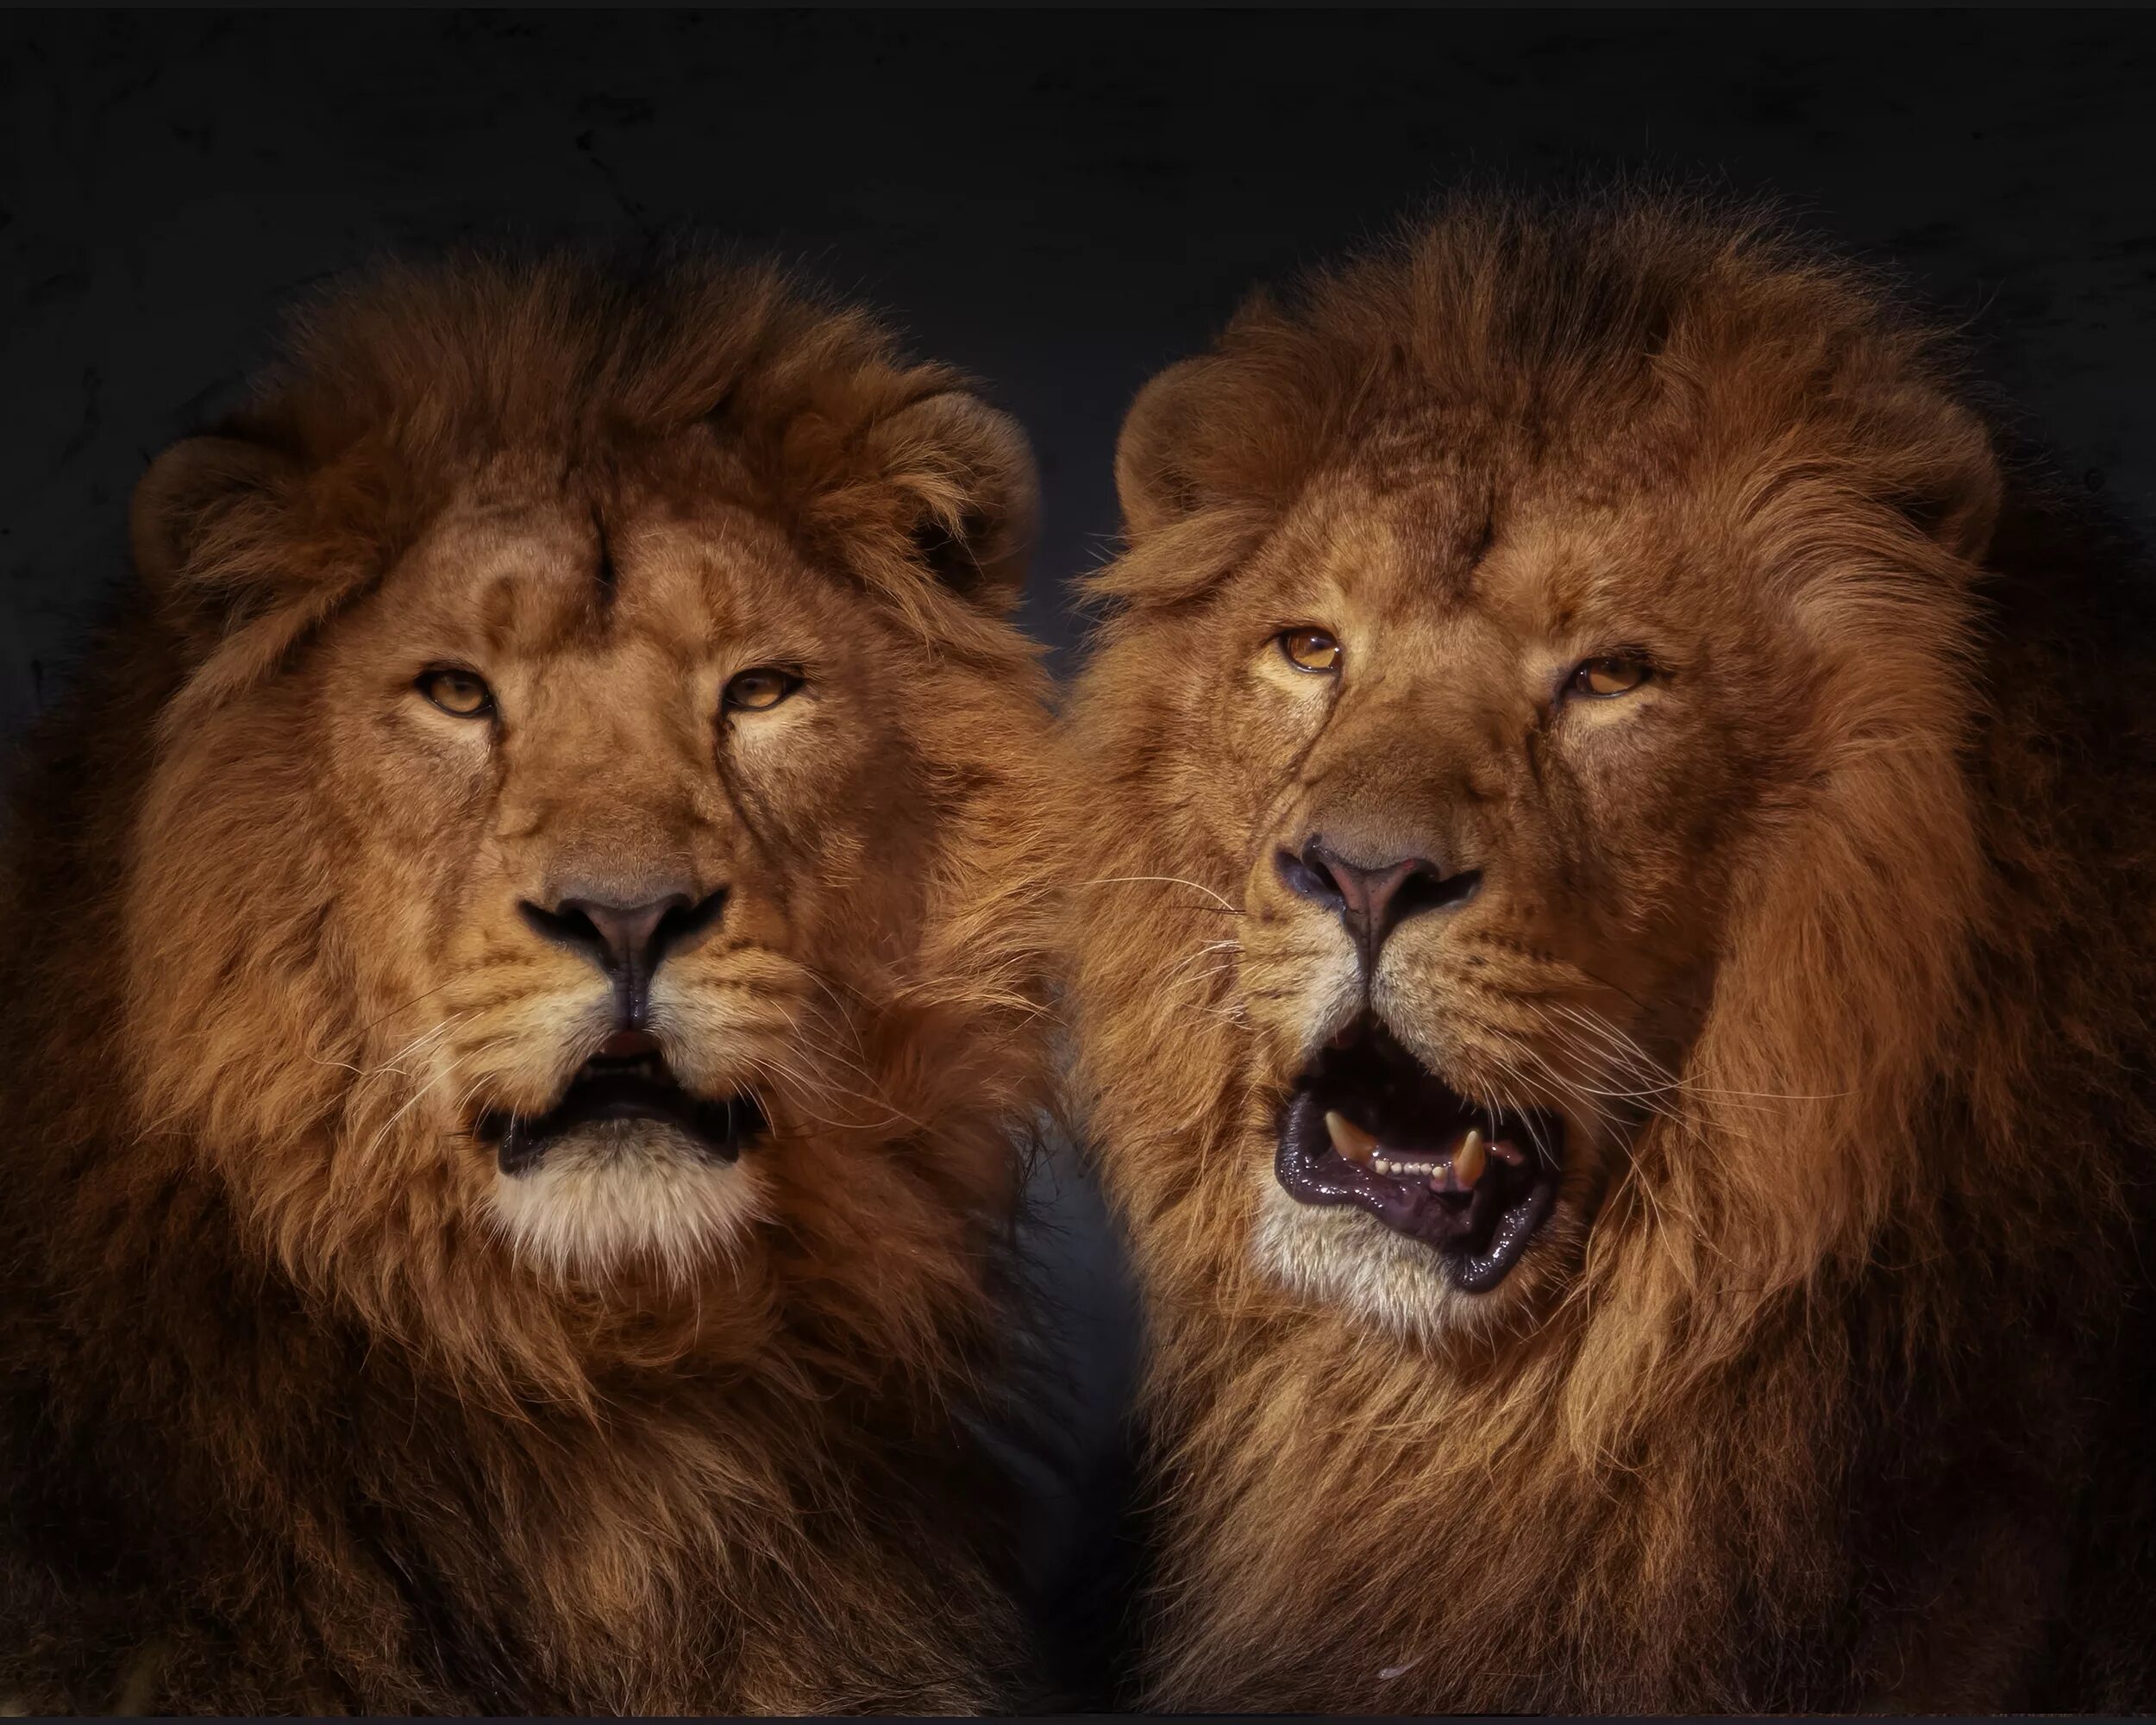 Лева 2 часа. Изображение Льва. Львы братья. Лев картинки. Морда Льва.